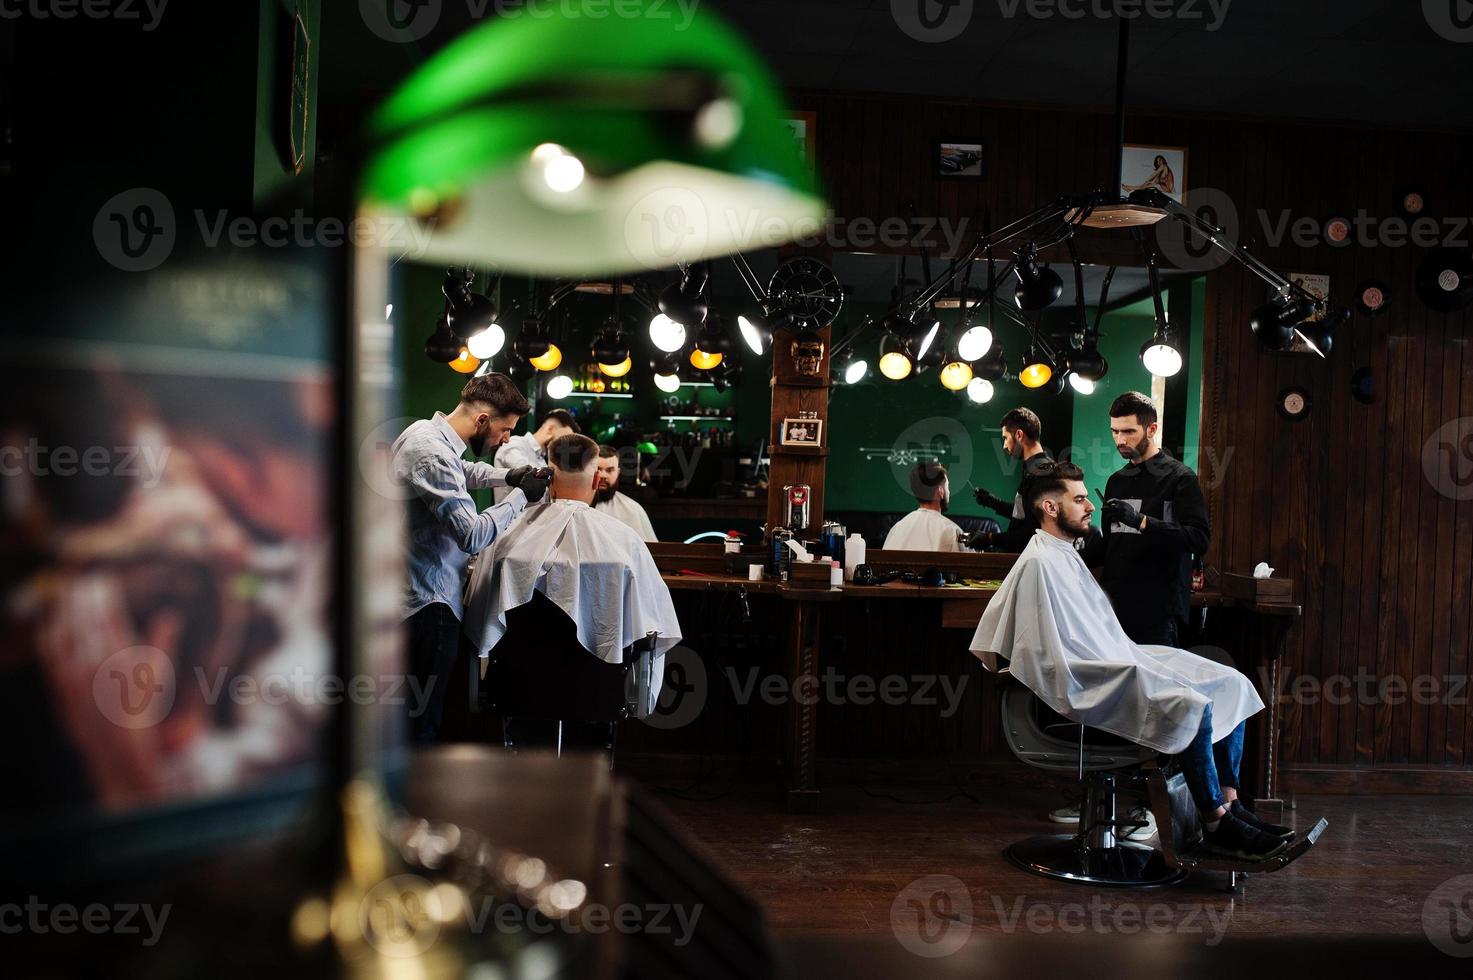 stilig skäggig man på frisersalongen, frisör på jobbet. foto